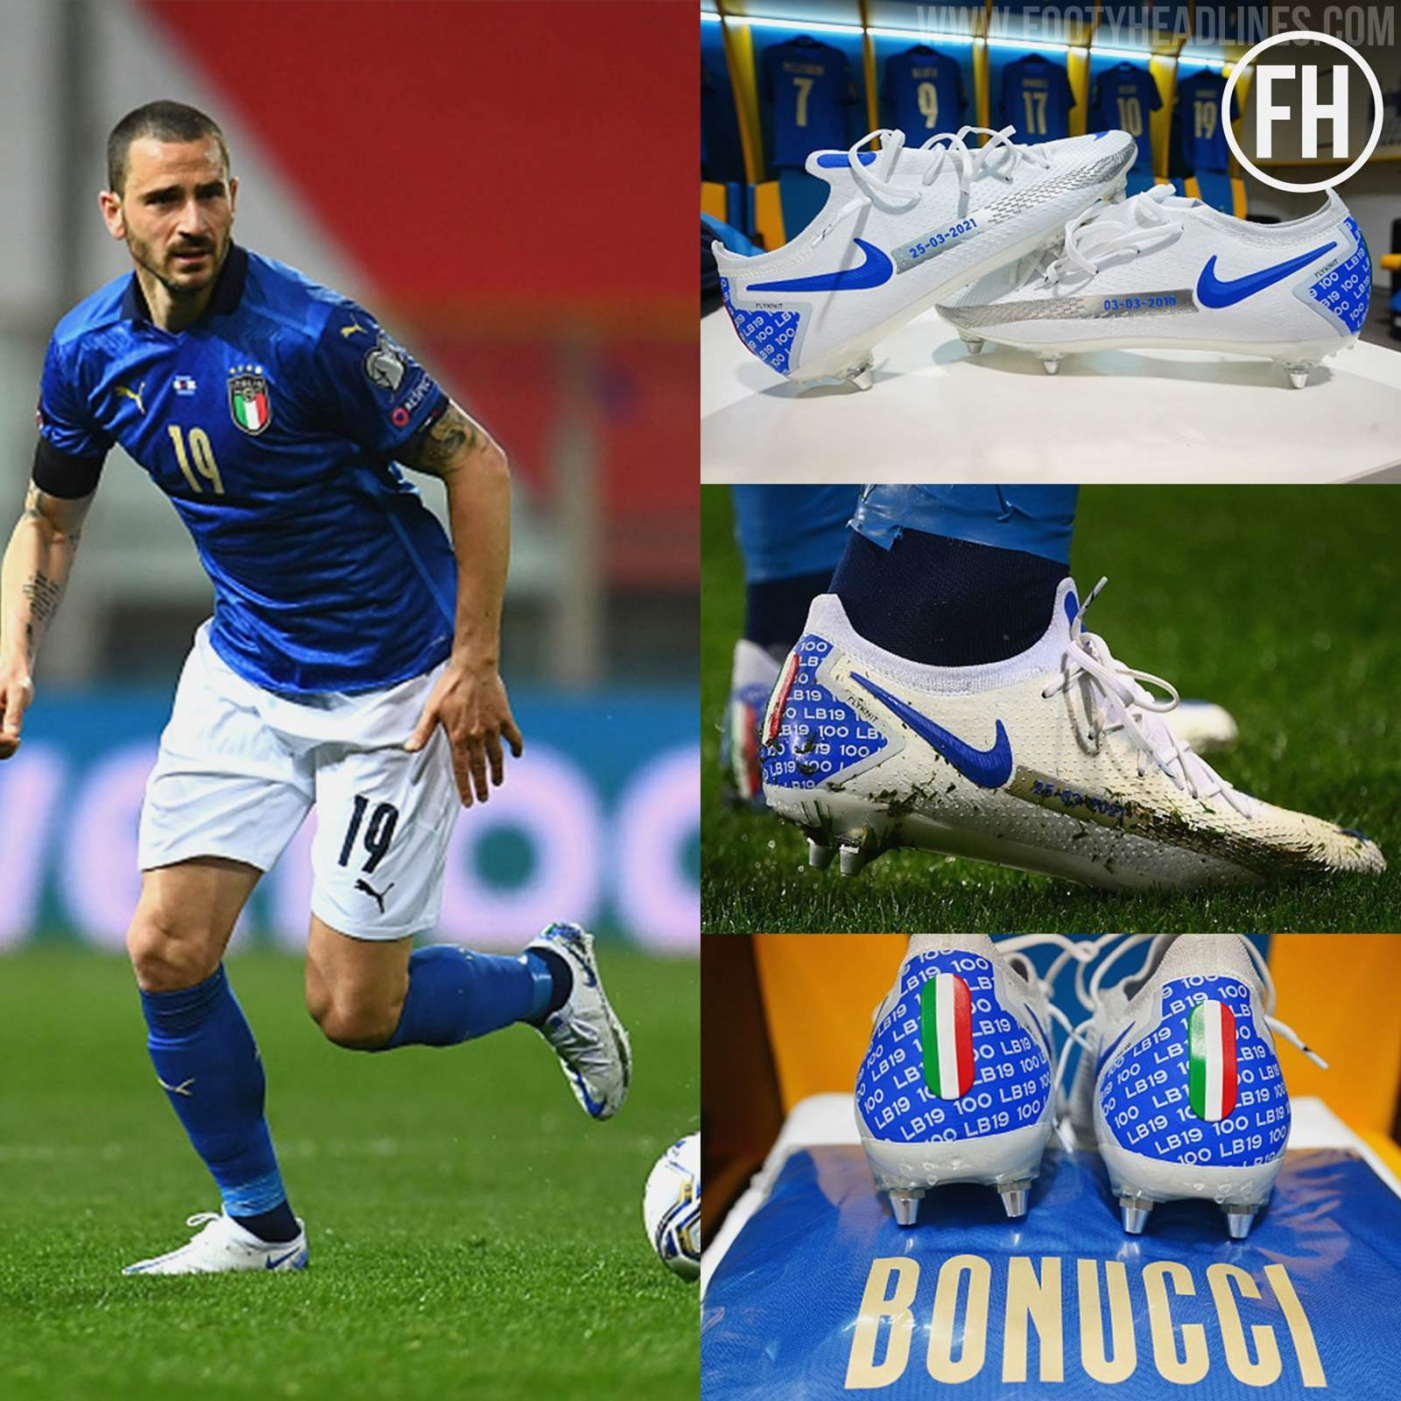 bonucci-boots (4).jpg